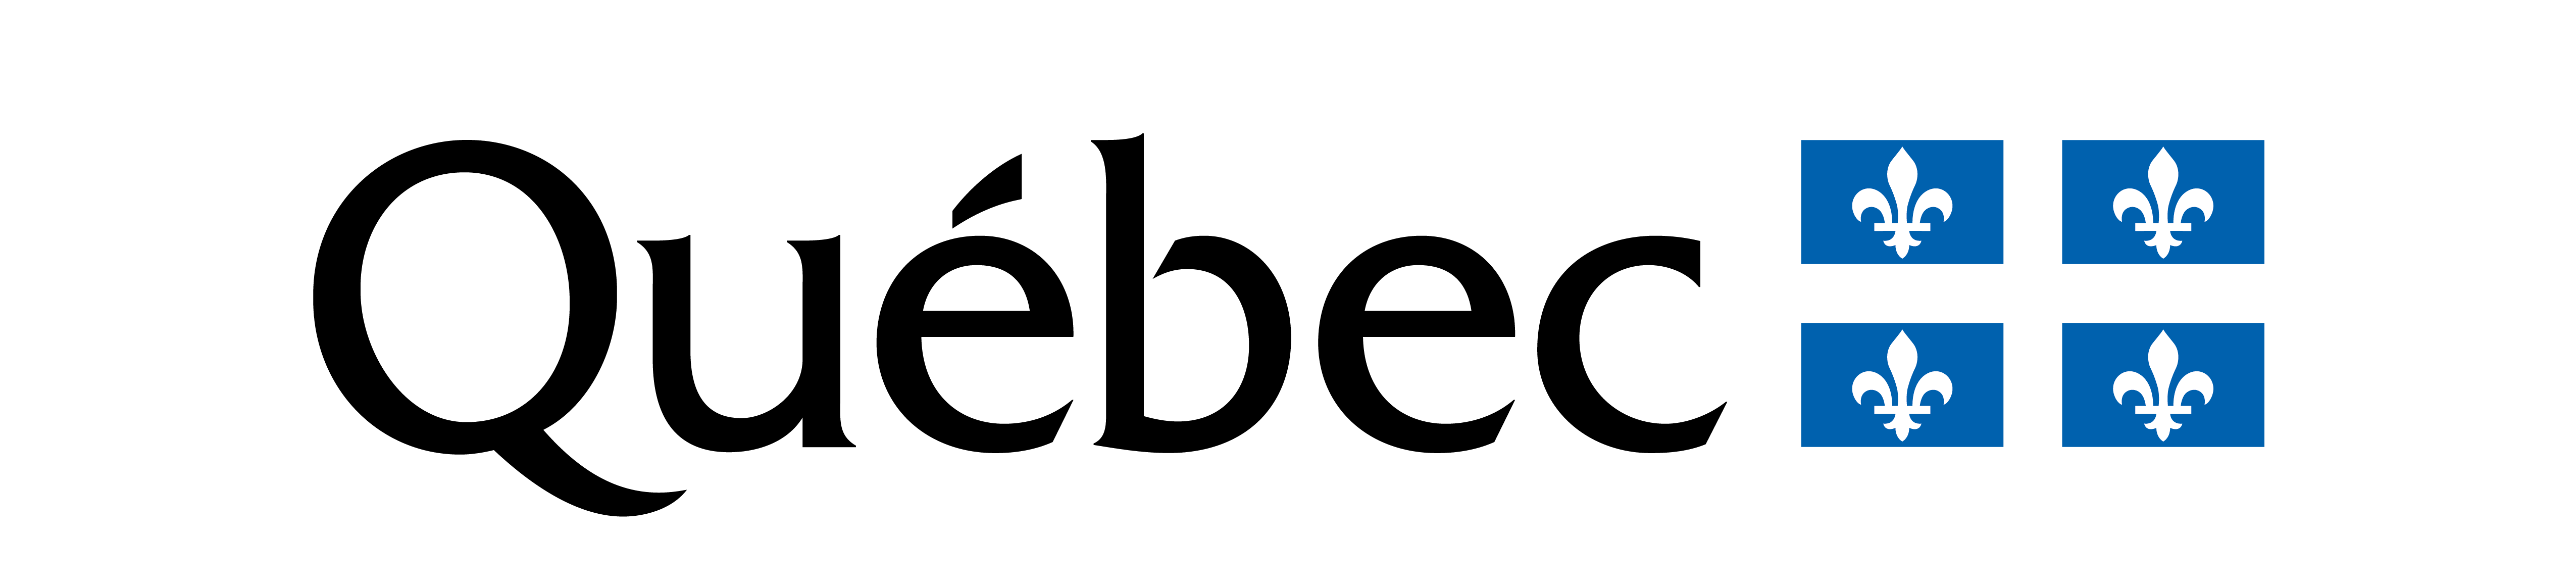 logo Québec